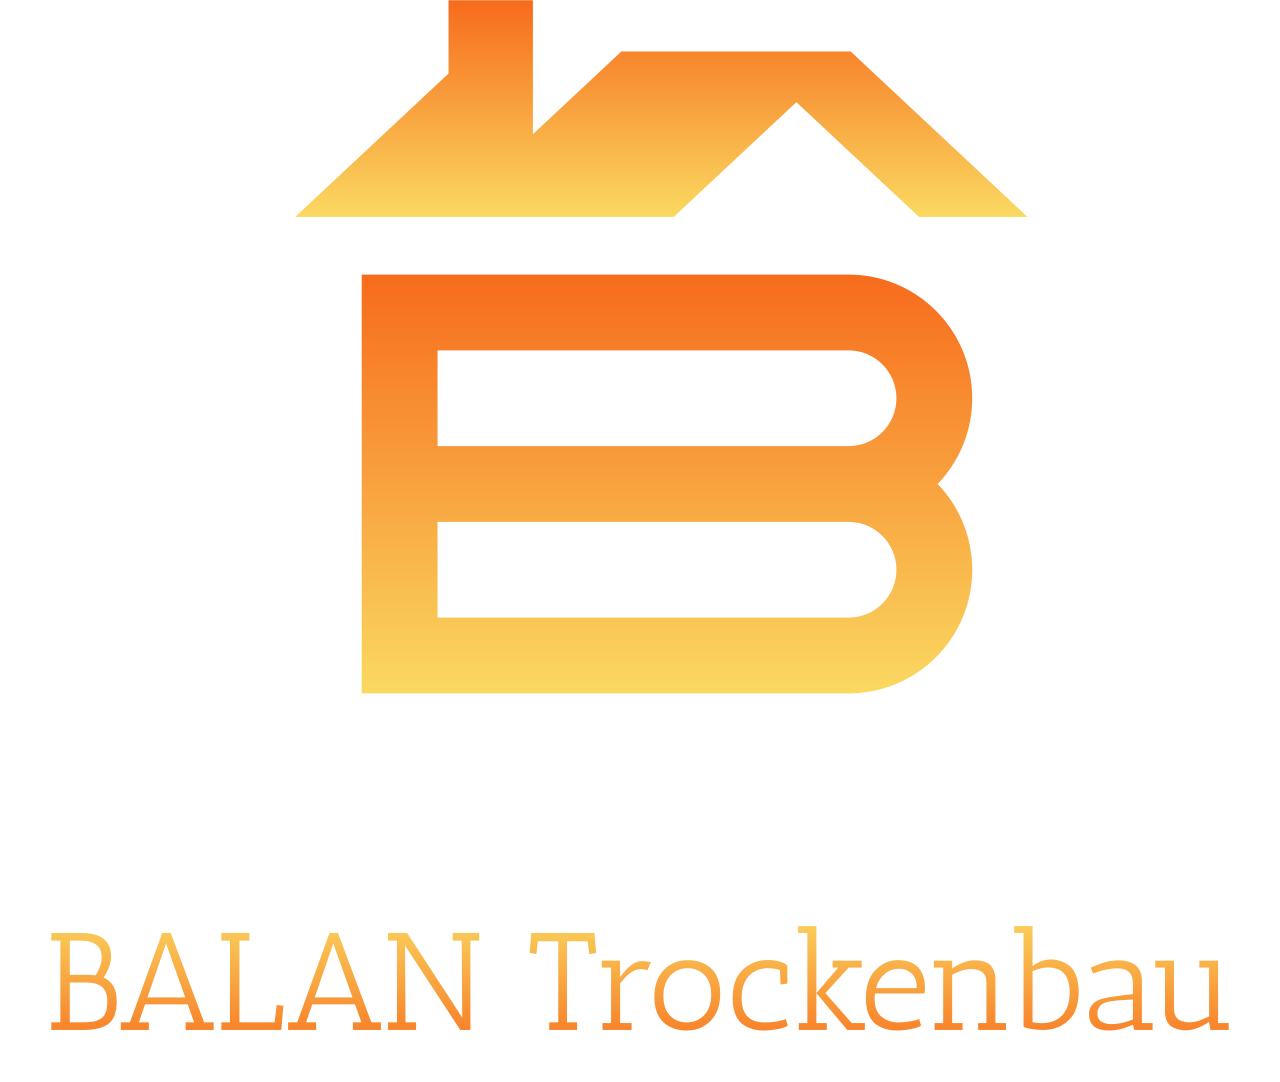 BALAN Trockenbau's web page